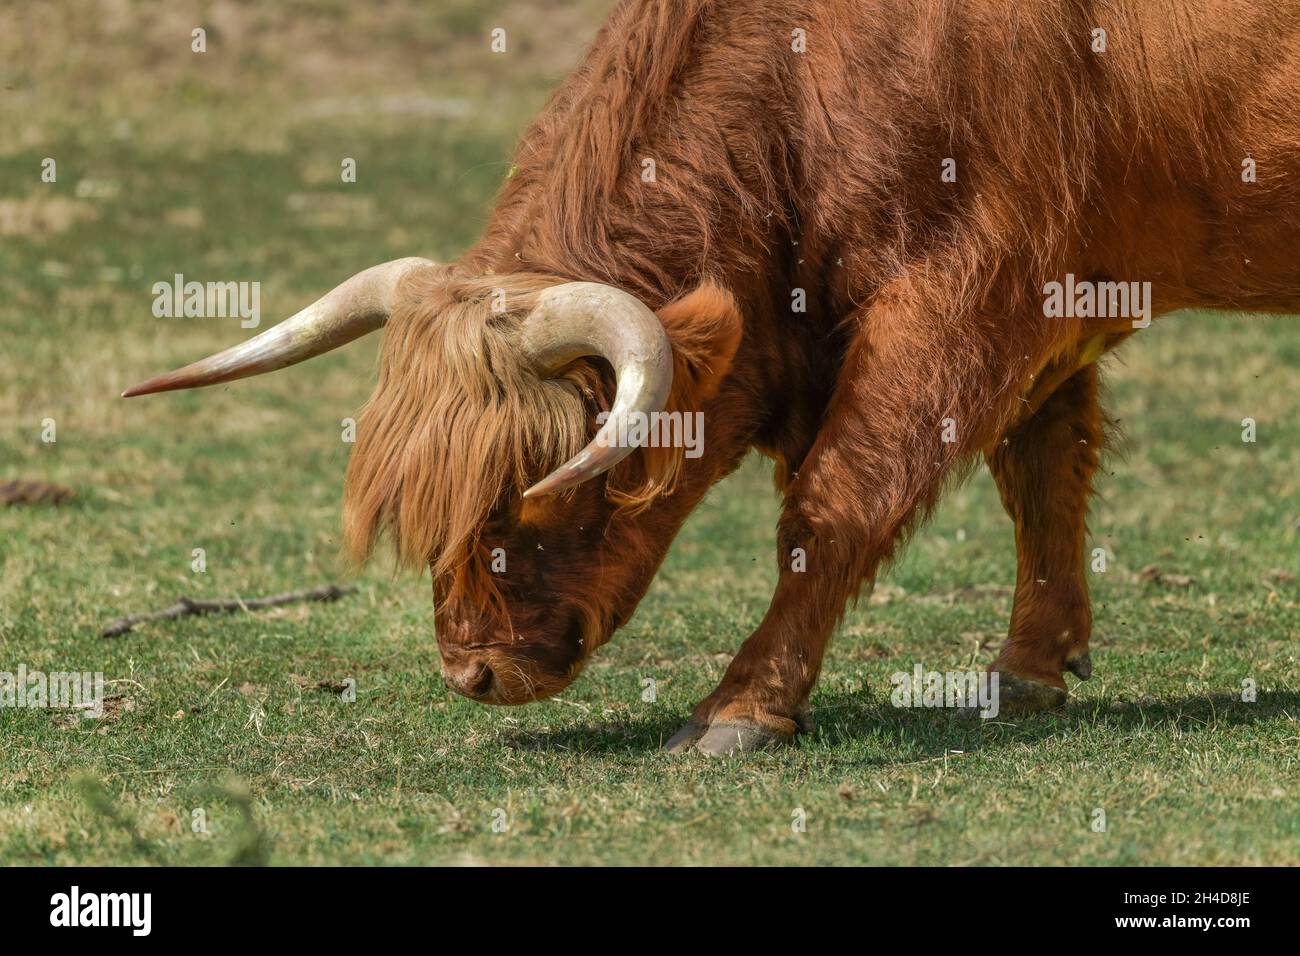 Schottisches Hochlandrind (Highland cattle), Sachsen-Anhalt, Allemagne Banque D'Images